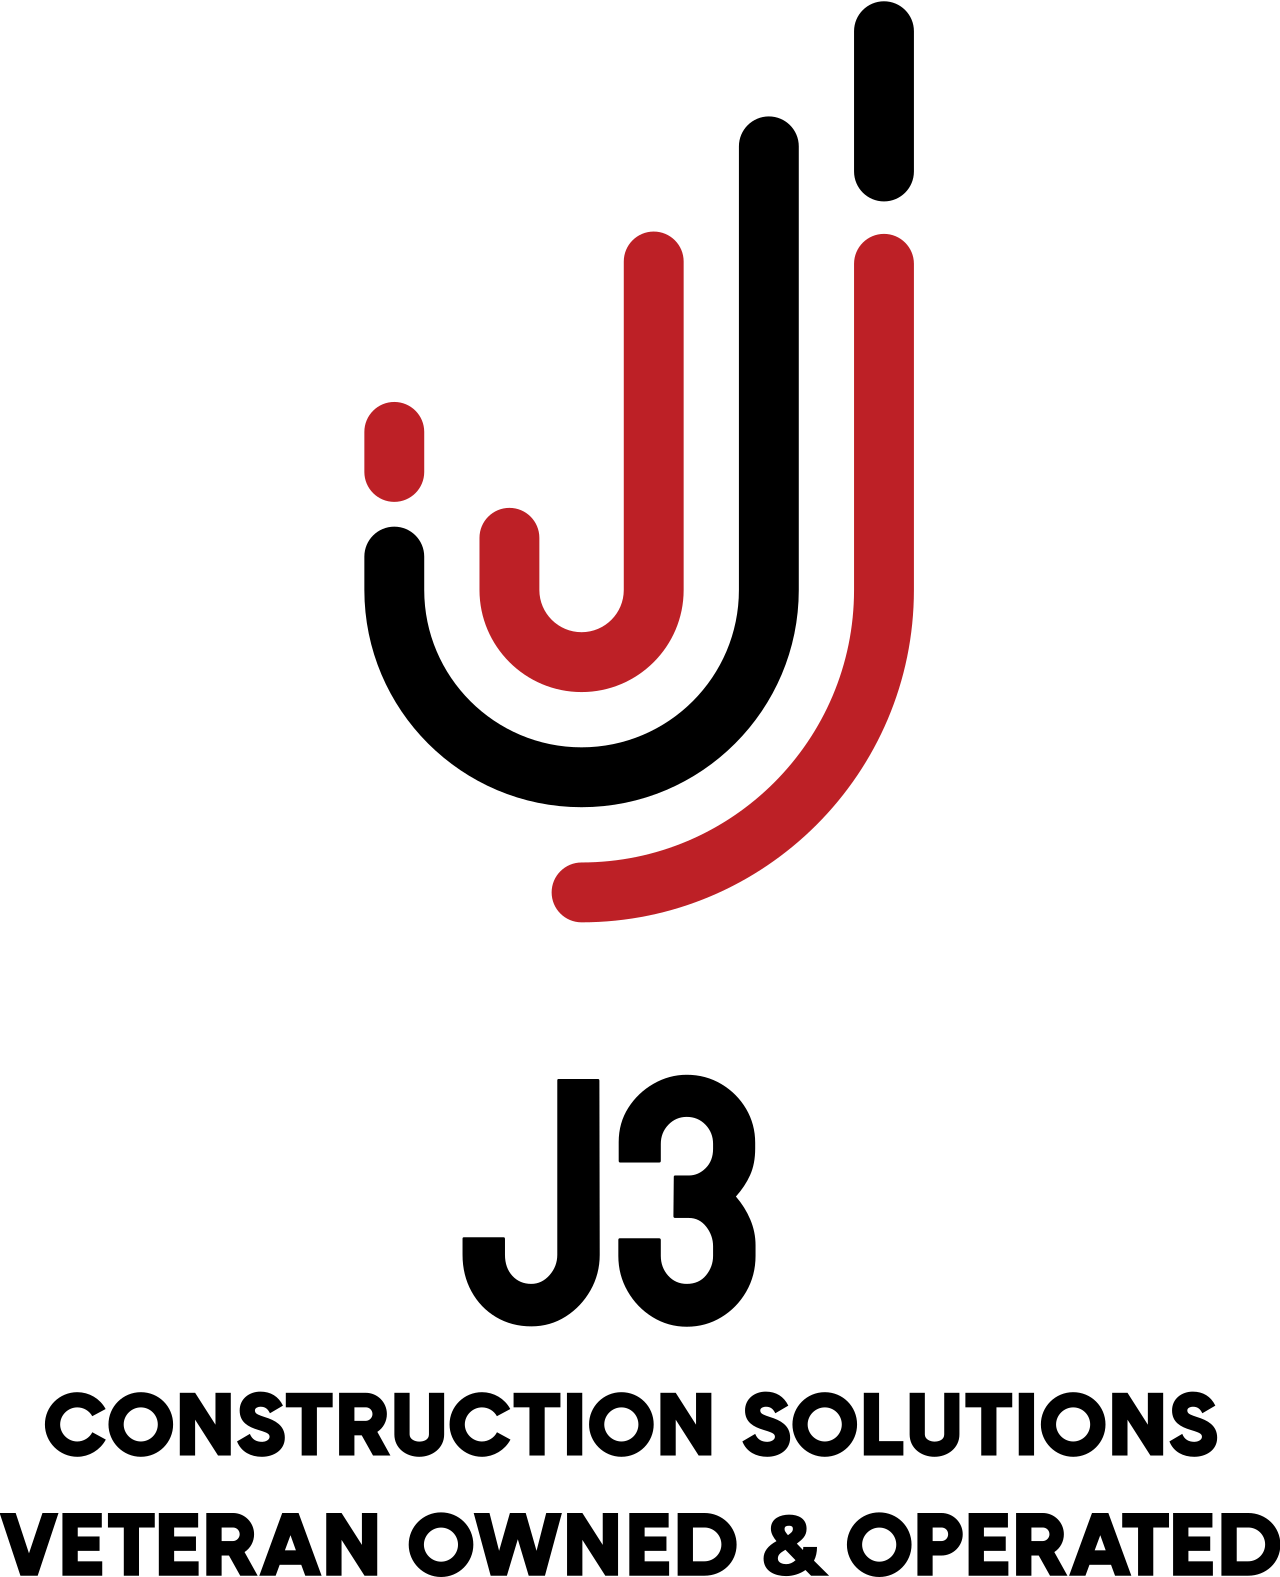 J3 's logo